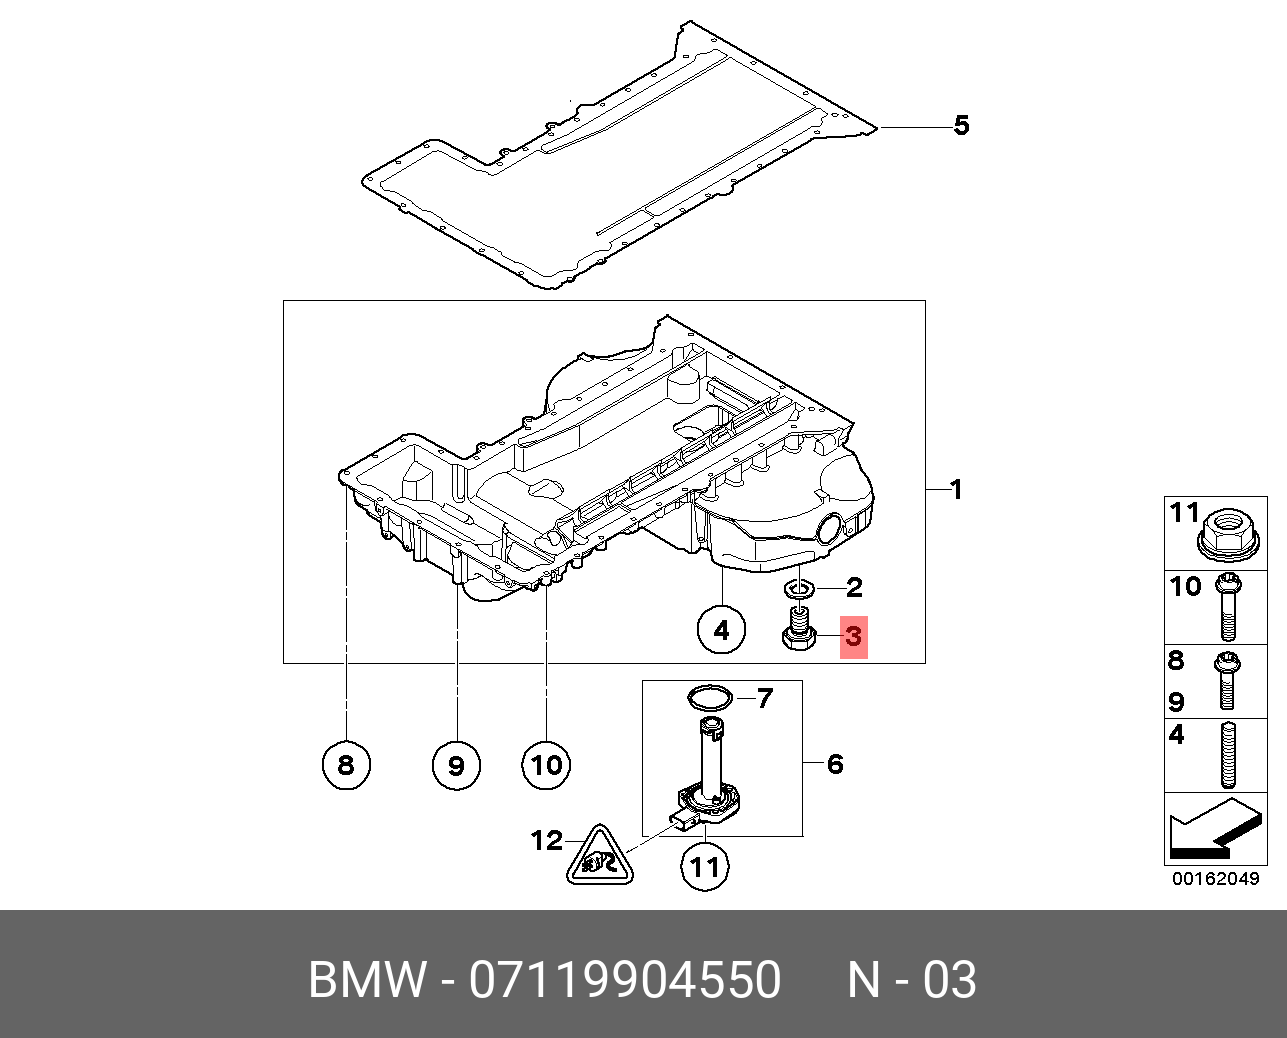 Пробка сливная поддона двигателя   BMW арт. 07119904550